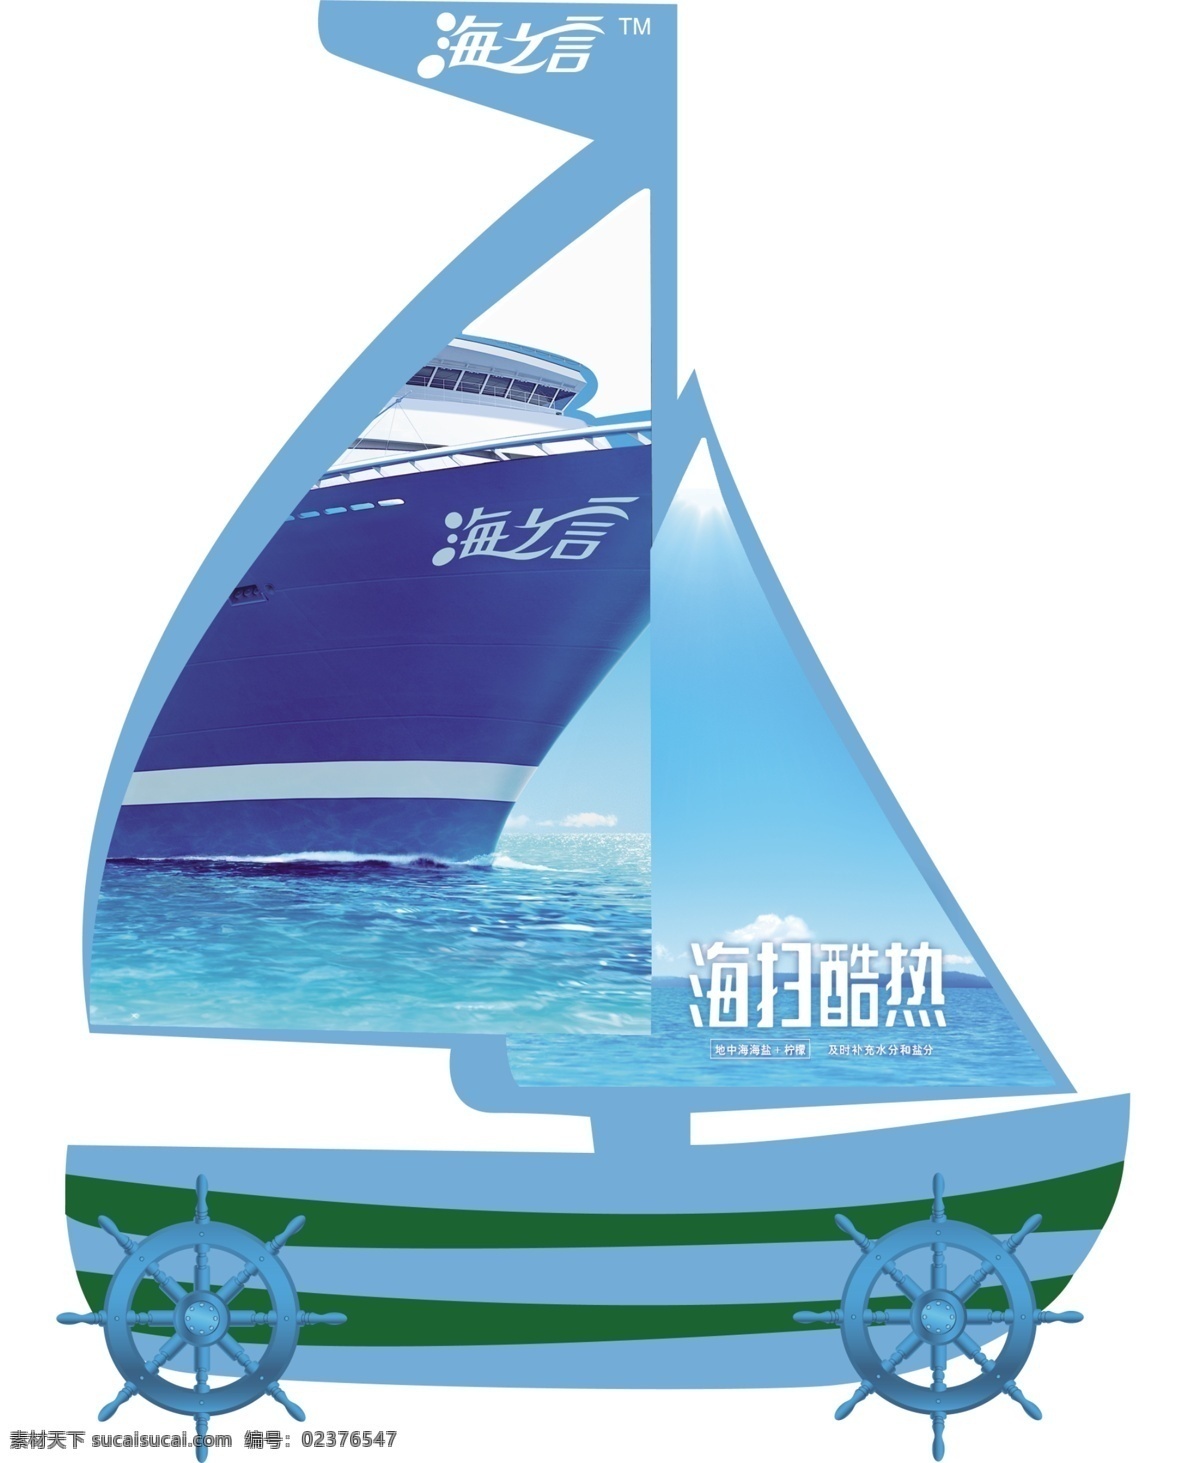 海扫酷热 帆船模型 异性 写真 喷绘 模型